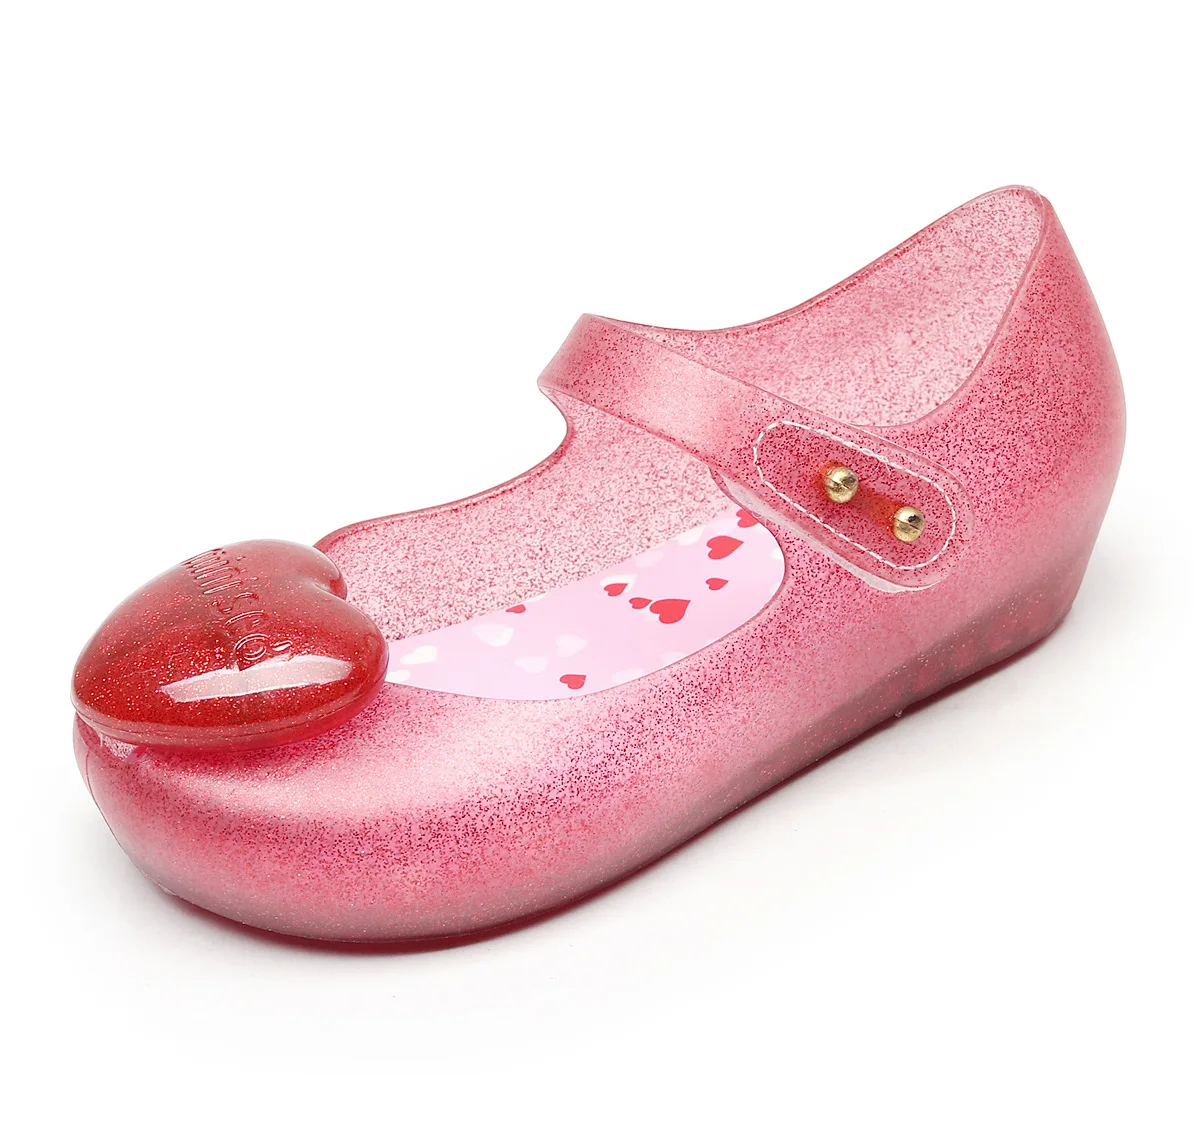 Мини SED/прозрачная обувь для девочек 2019 г. летние непромокаемые Нескользящие сандалии из ПВХ с сердечками для девочек, обувь для девочек